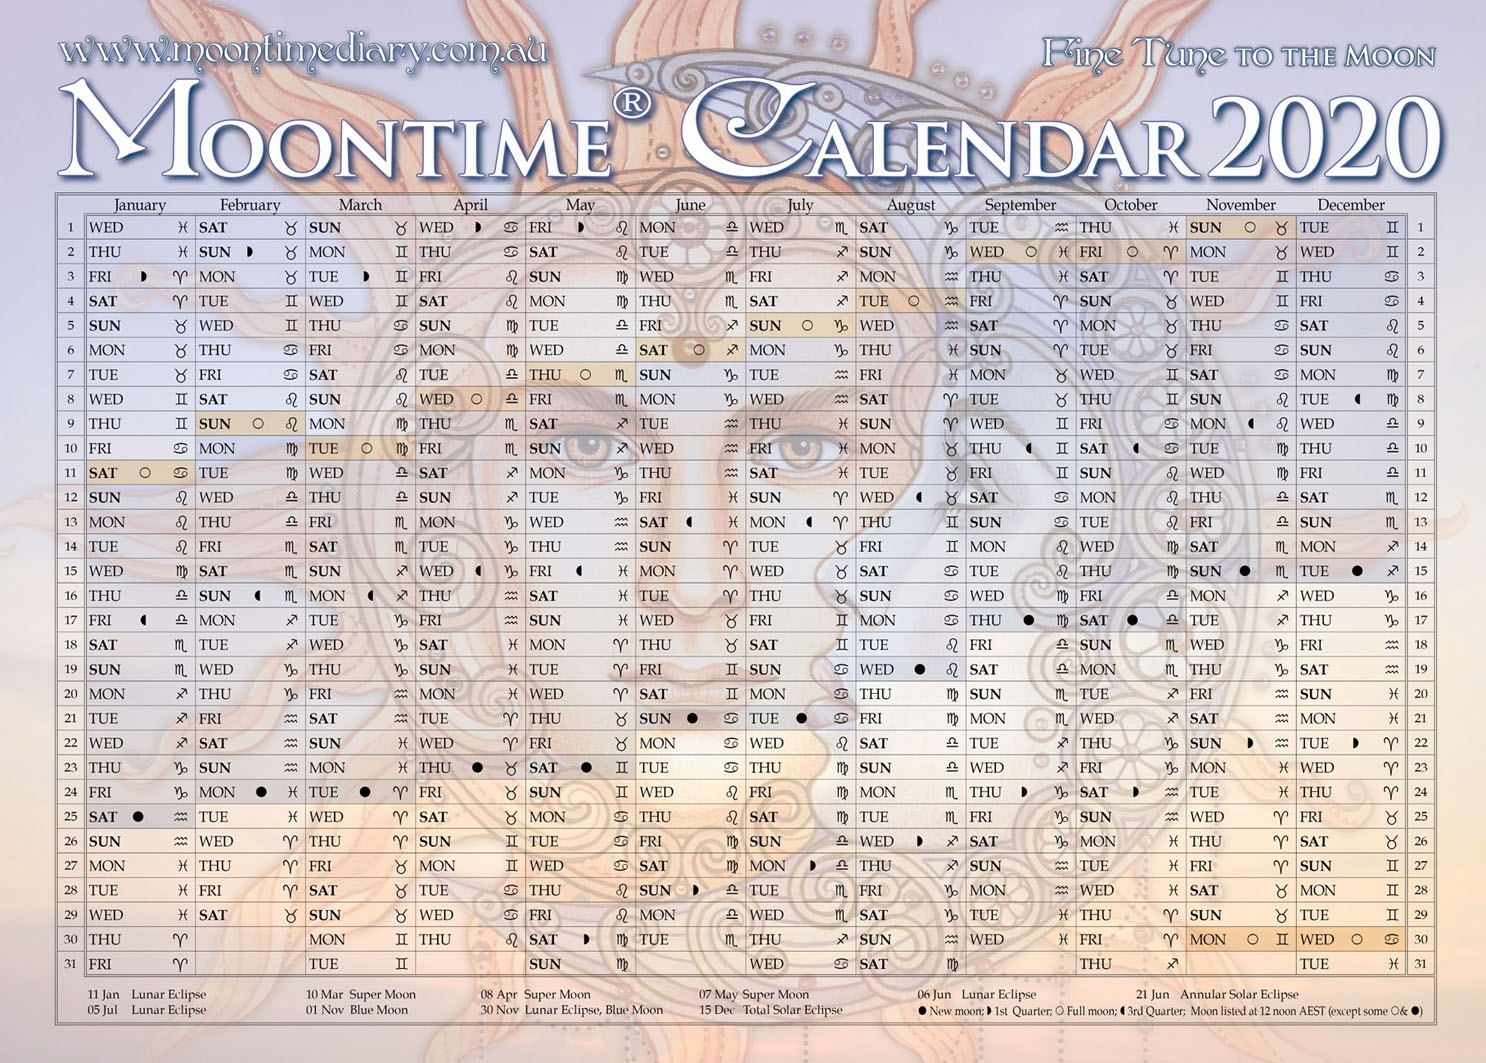 Moontime Calendar 2020